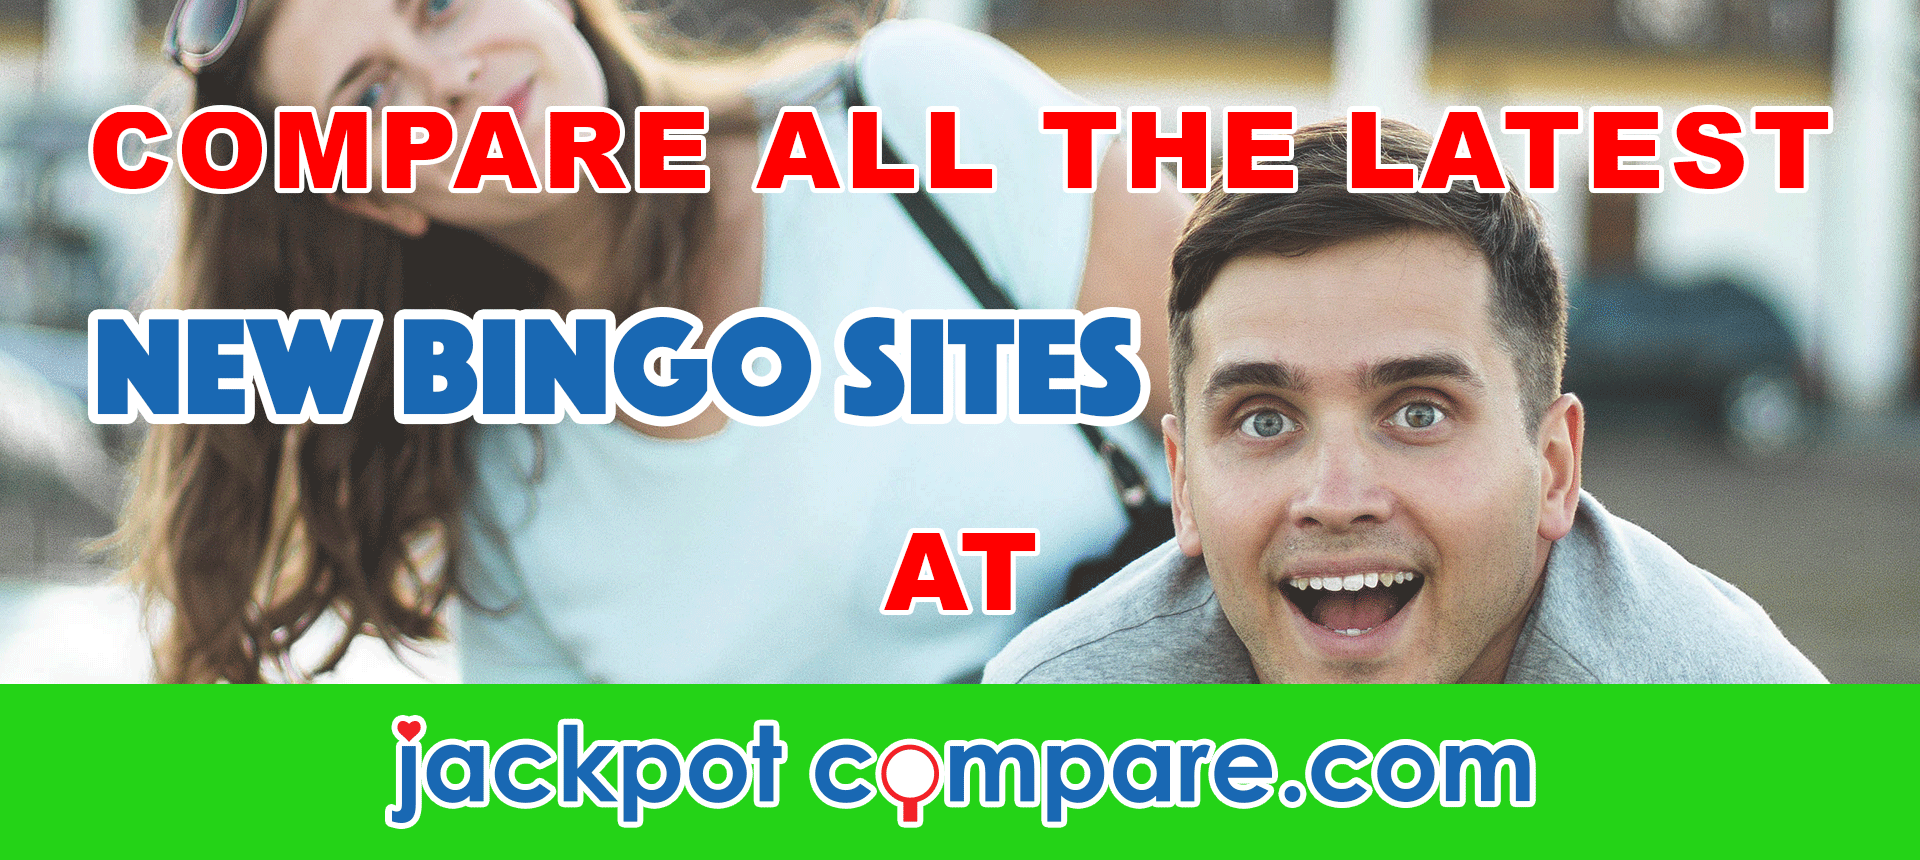 new bingo sites -Codes For The Latest Bingo Bonuses 2019